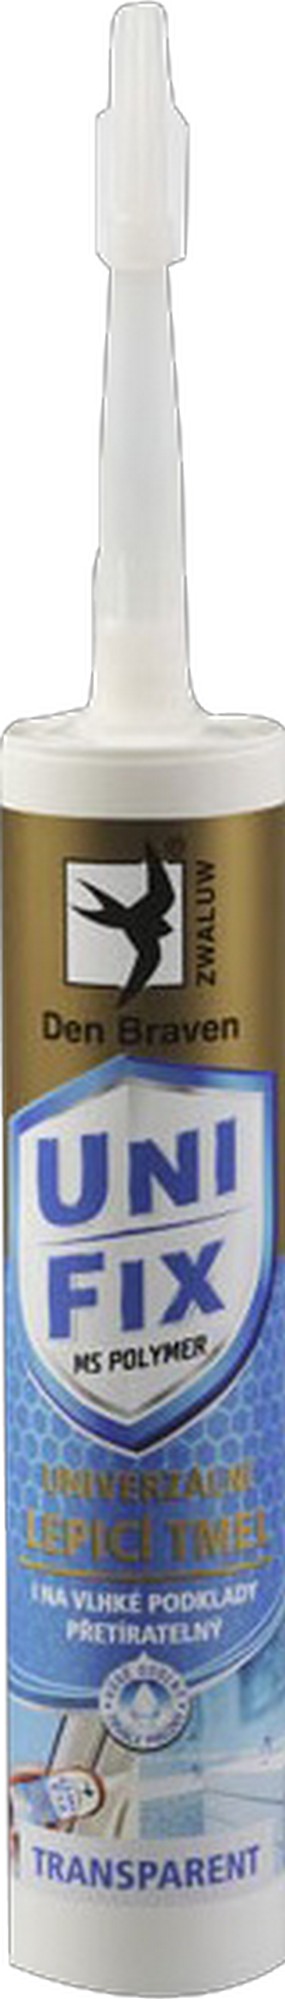 Tmel univerzální Den Braven UNIFIX šedý 290 ml Den Braven